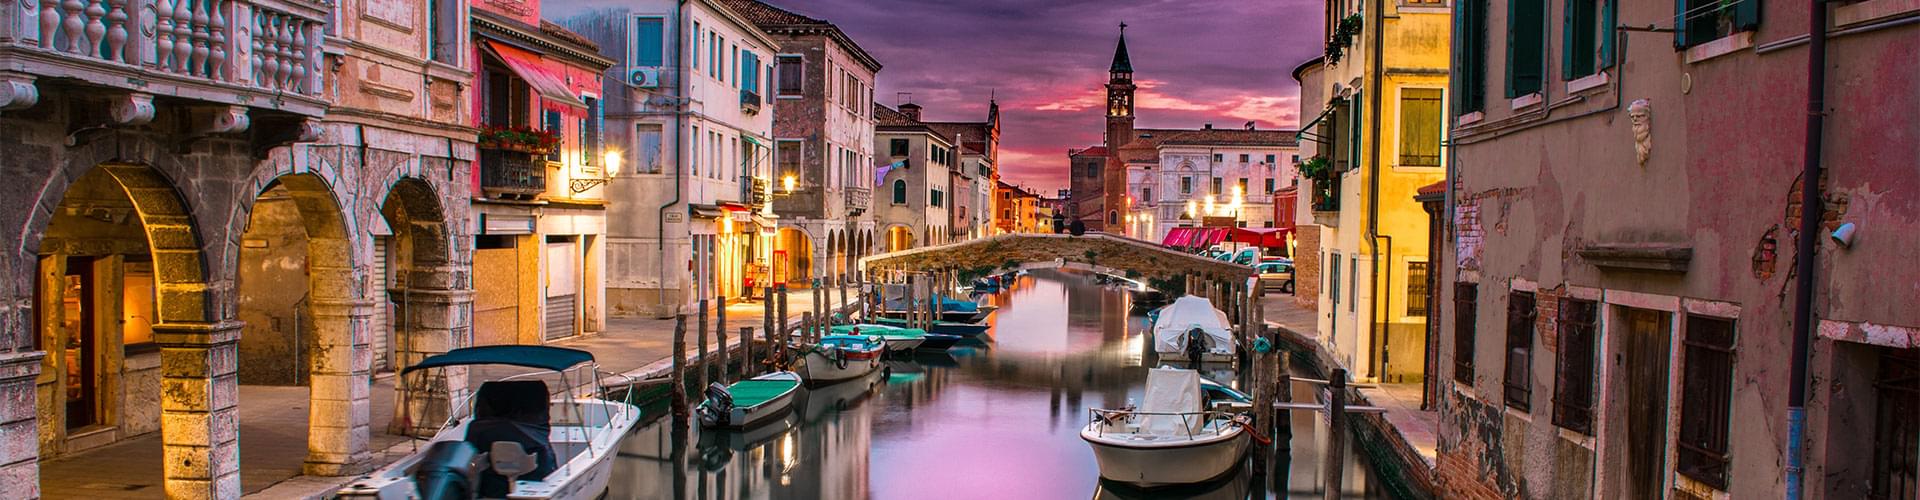 Venetië, de thuisbasis van de productie van Murano-glas